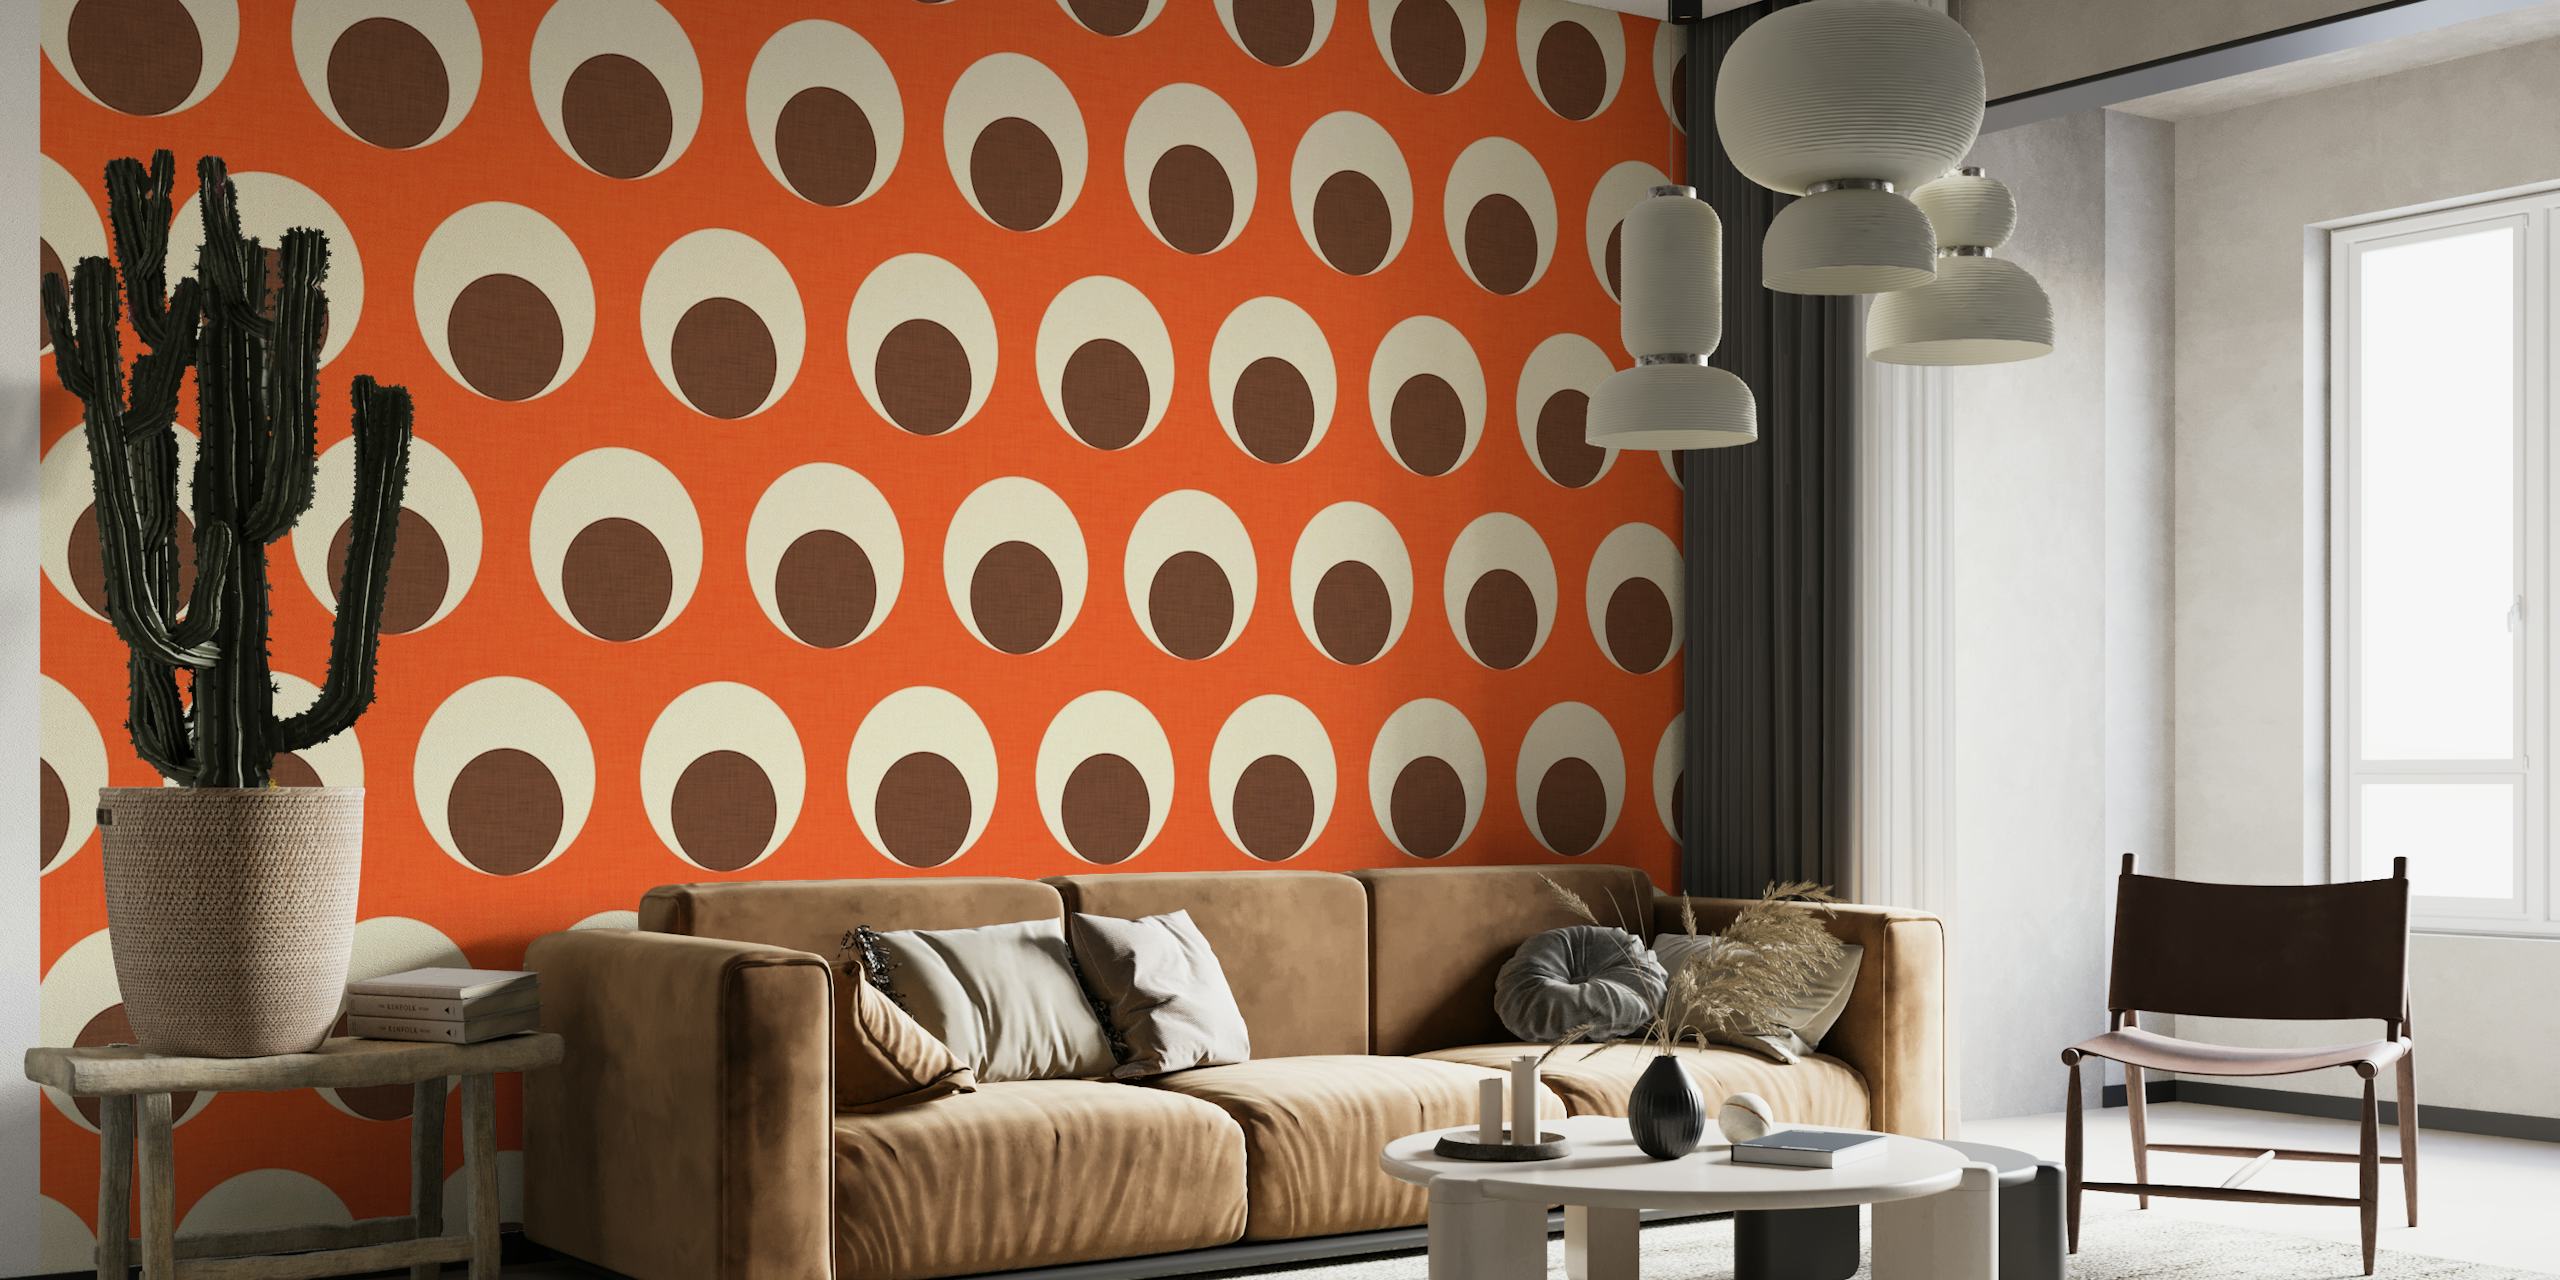 Papier peint mural à motif de pois orange et blanc cassé pour un design d'intérieur moderne